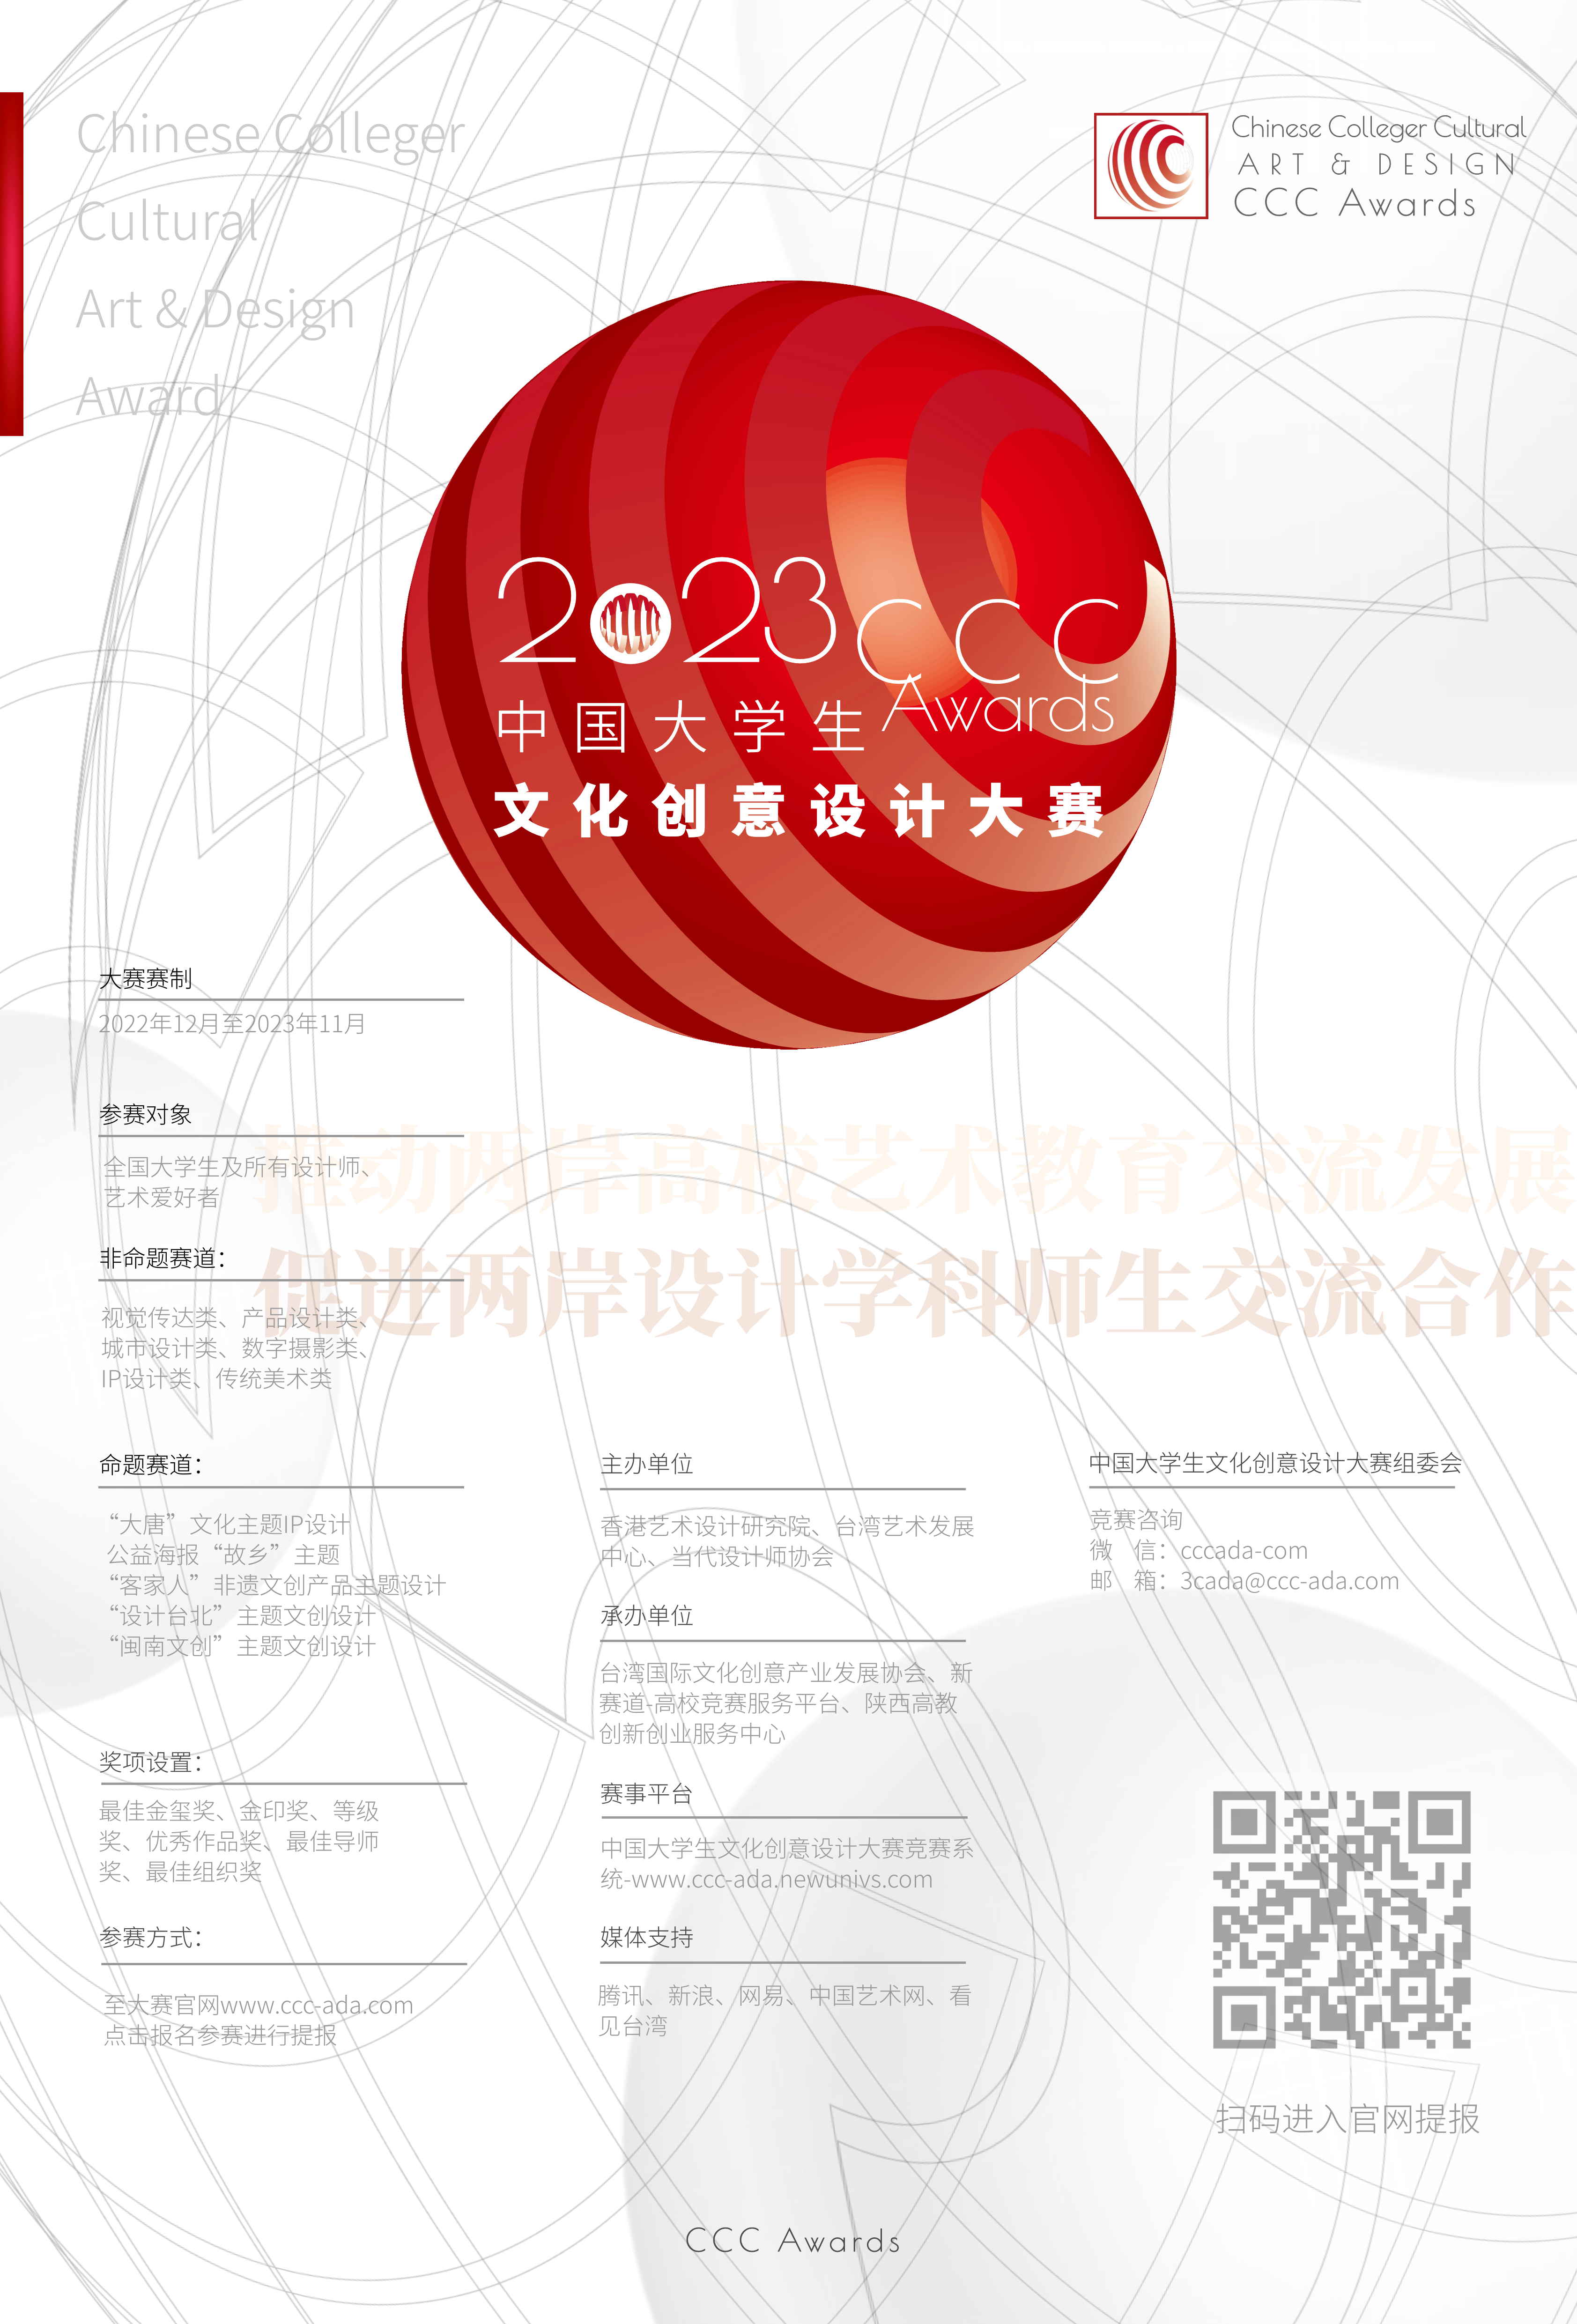 2023年中国大学生文化创意设计大赛-竖版海报-中国大学生文化创意设计大赛-大文赛官网